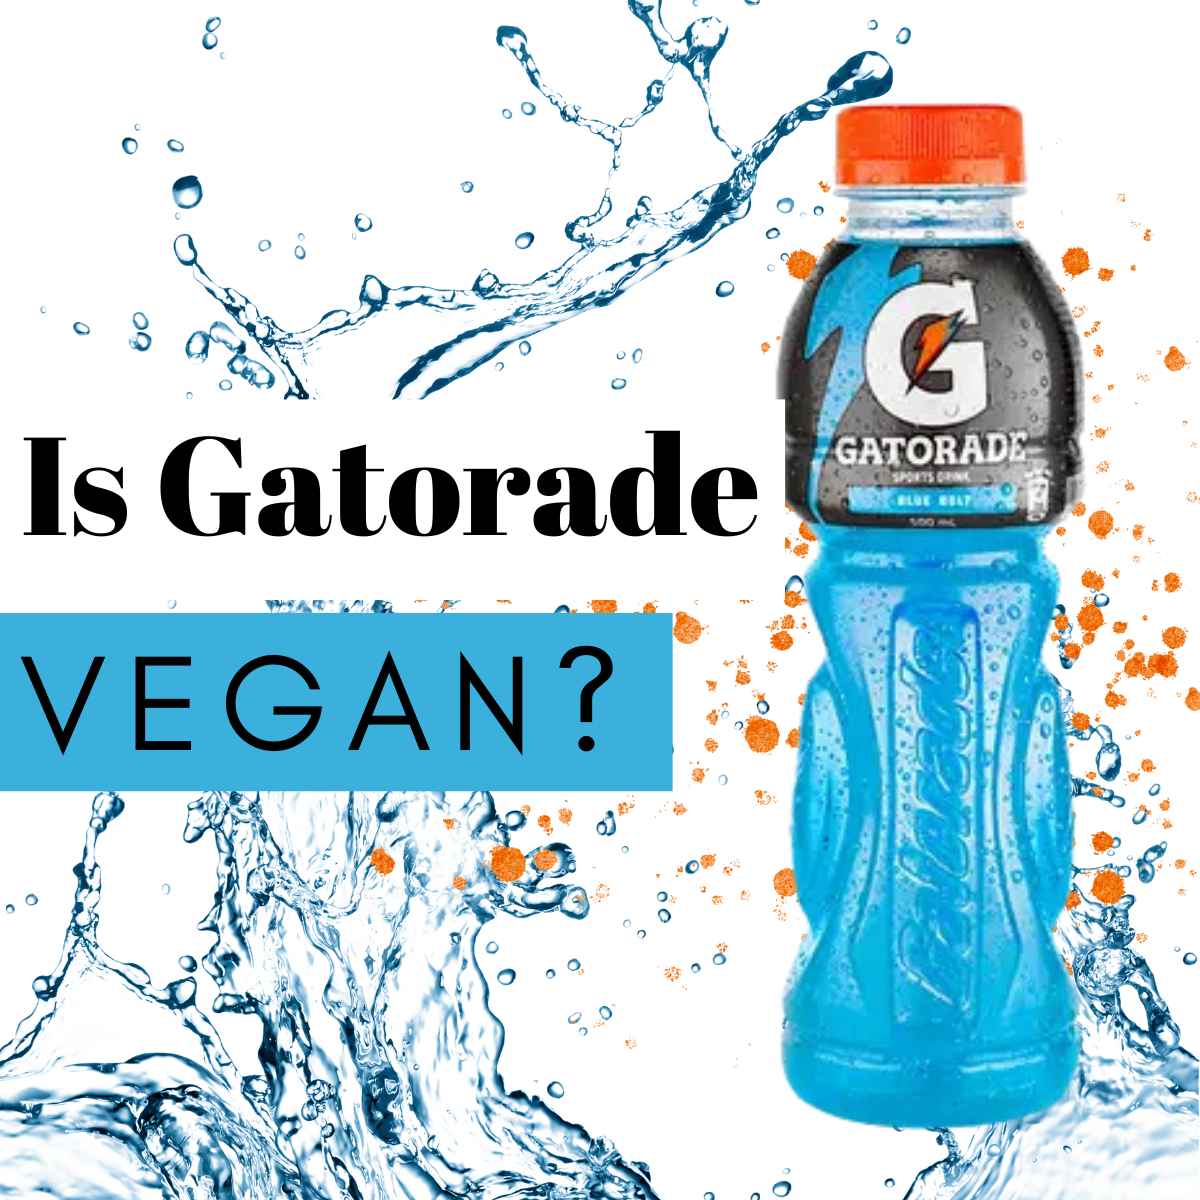 Blue color Gatorade bottle, water splash and banner saying is Gatorade vegan?